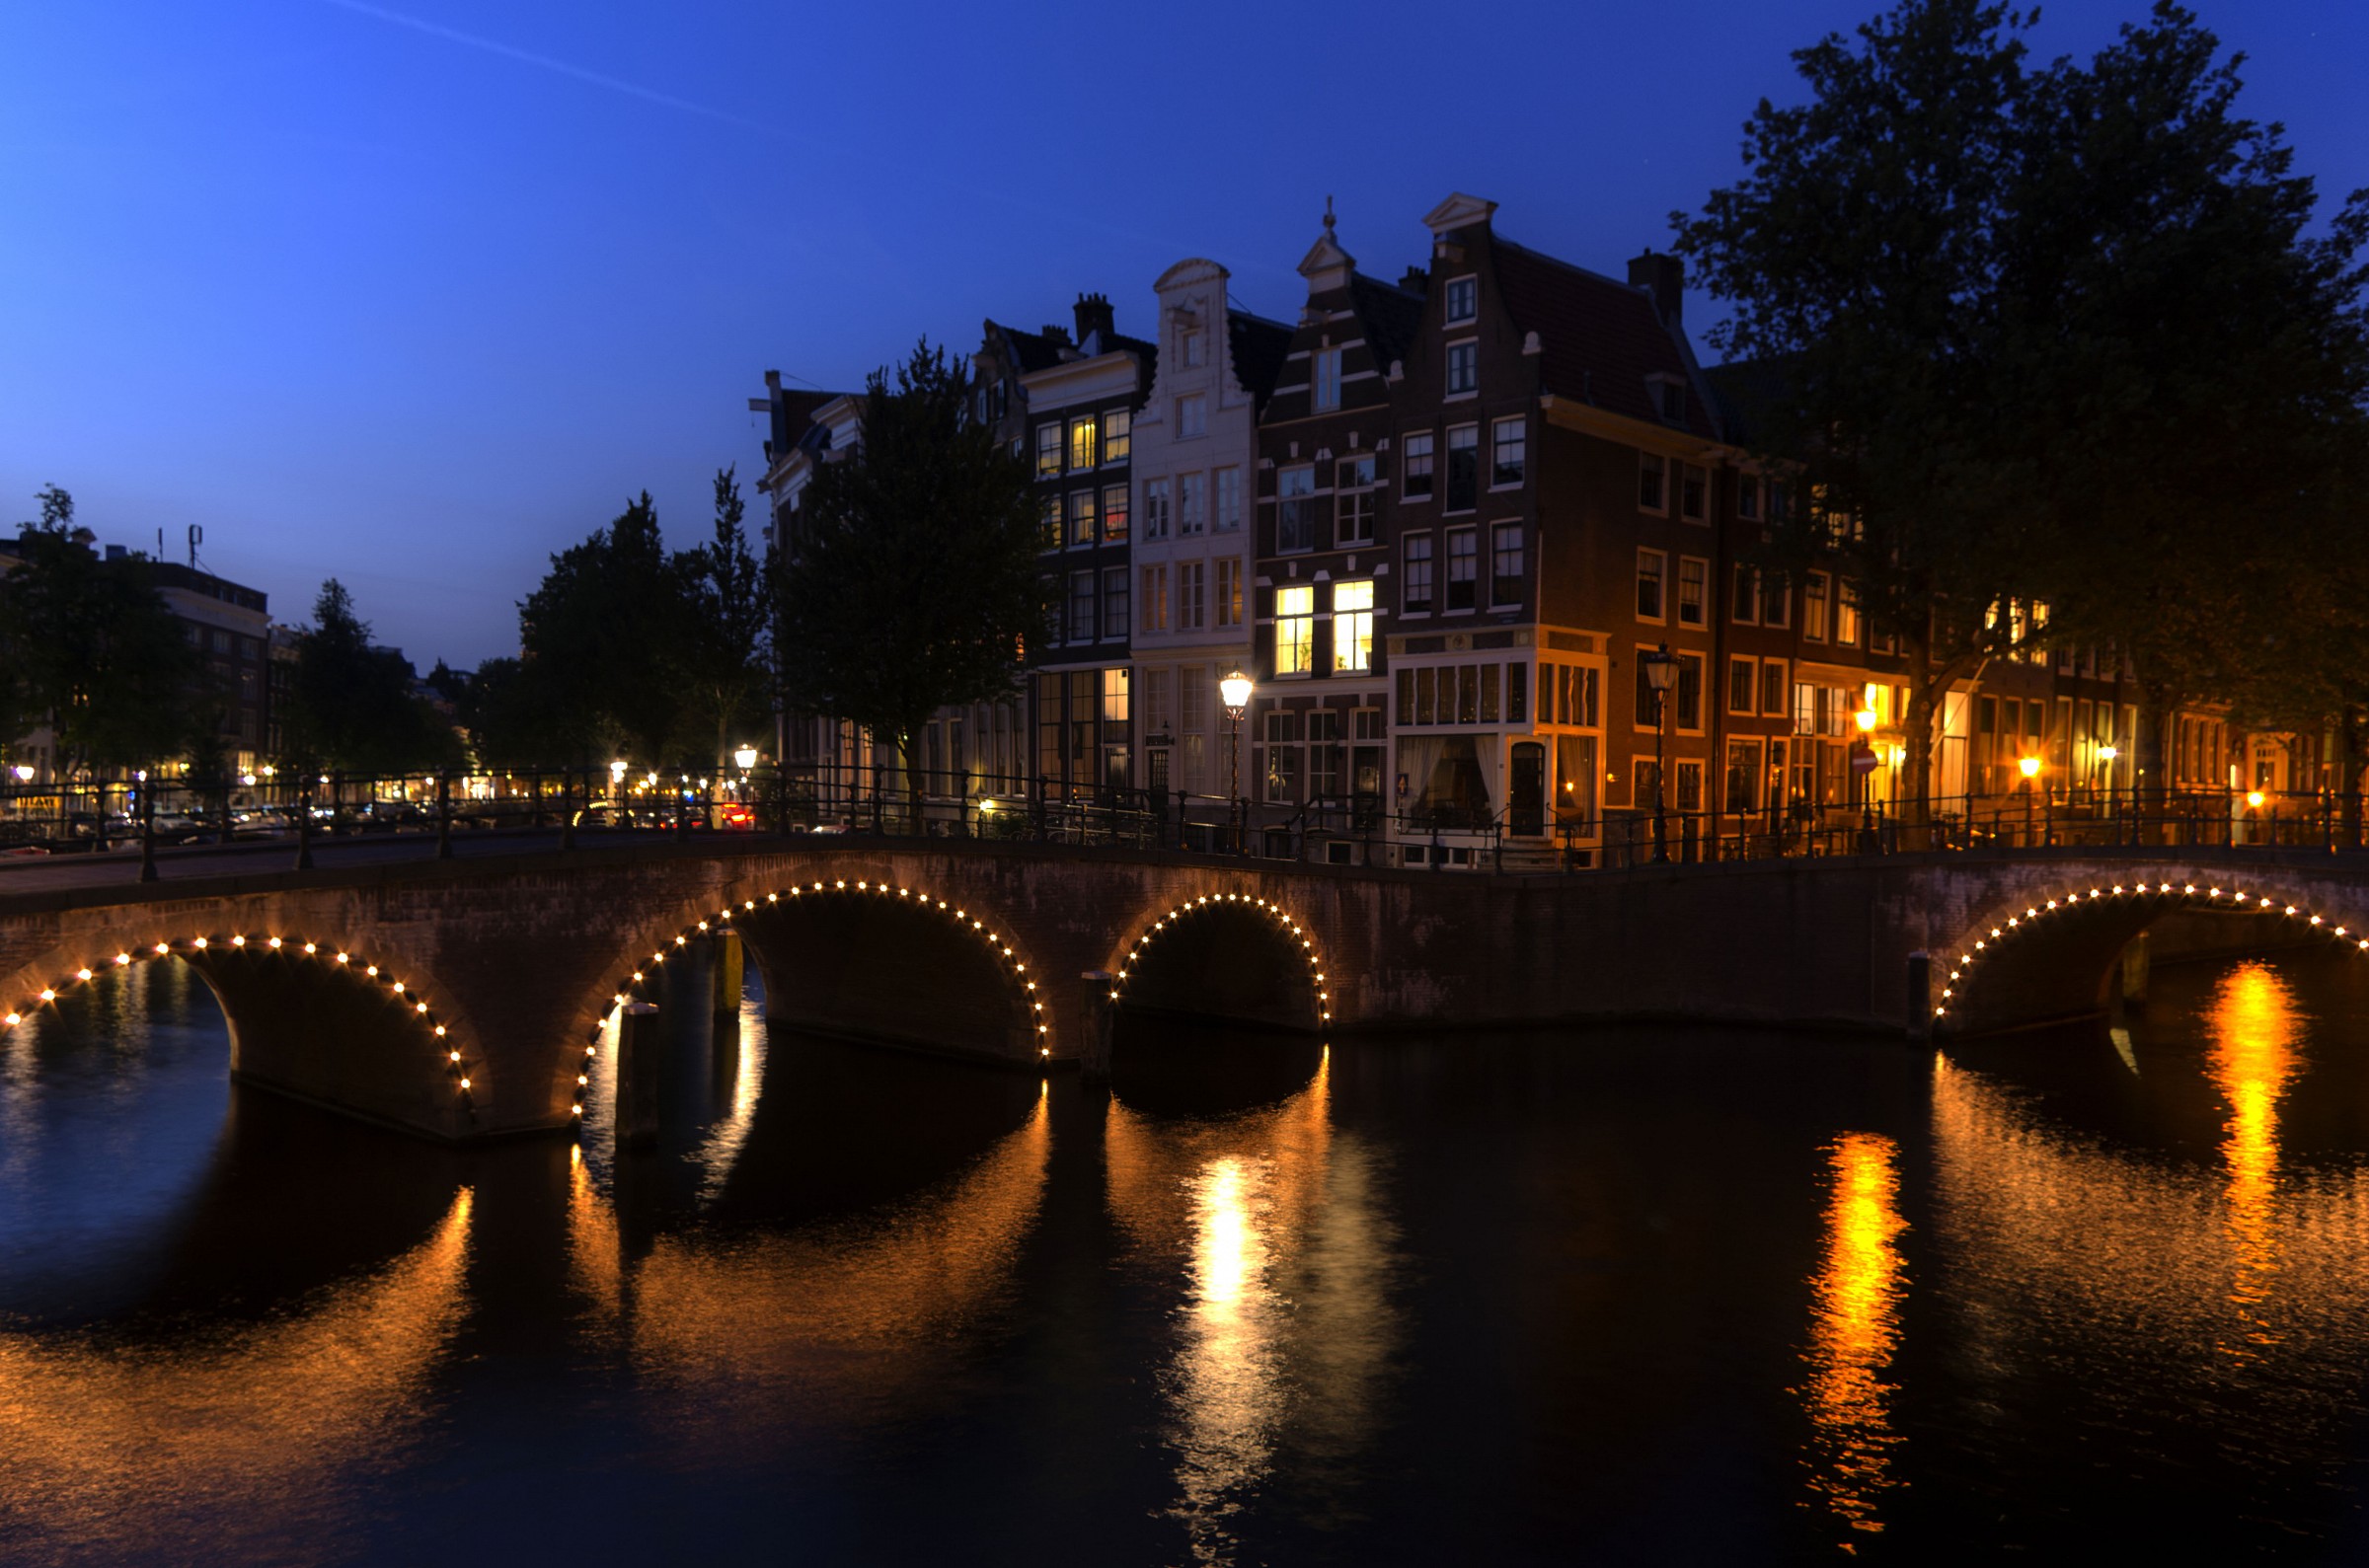 Bridges of Amsterdam...